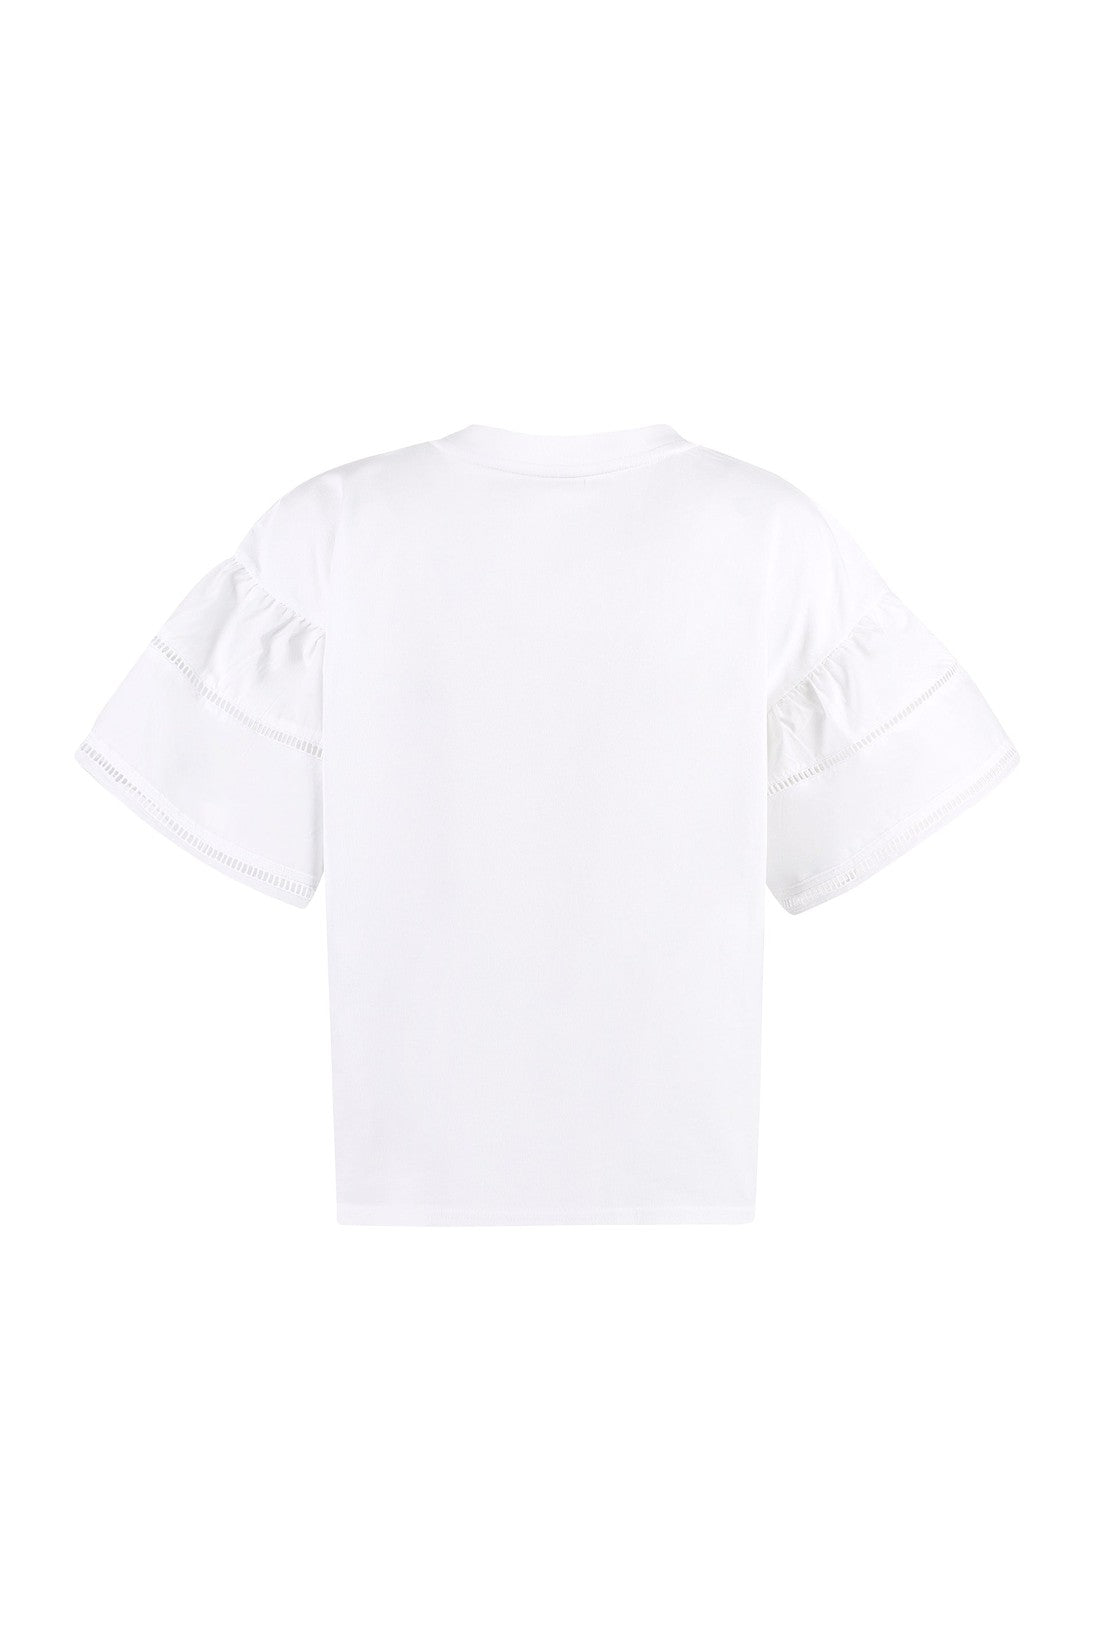 Woolrich-OUTLET-SALE-Lakeside cotton T-shirt-ARCHIVIST